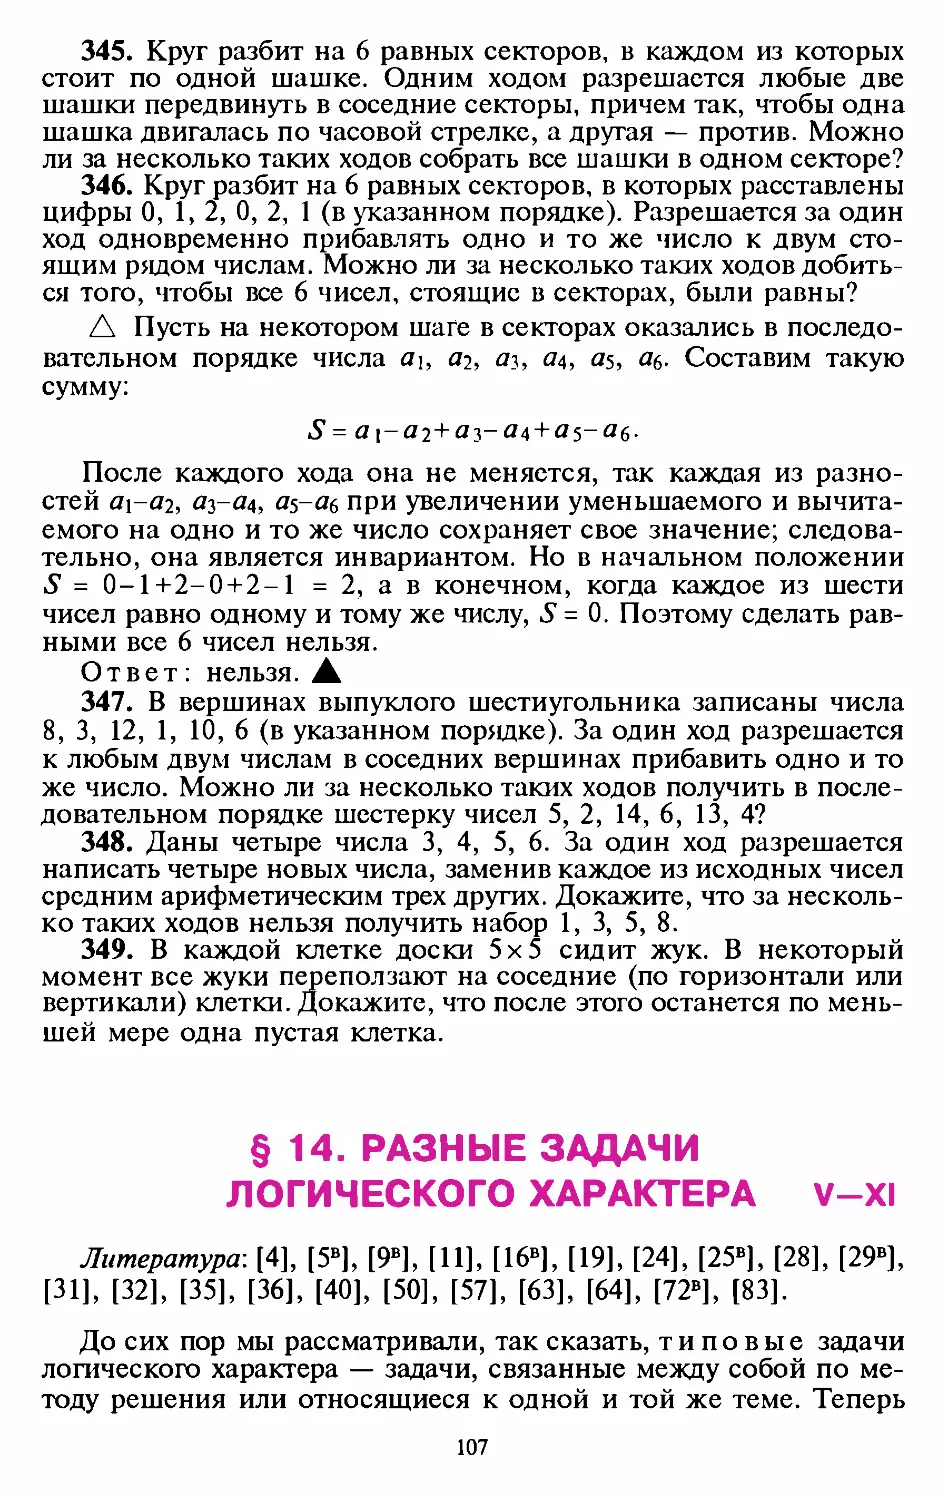 ﻿§14. Разные задачи логического характера øV—XI